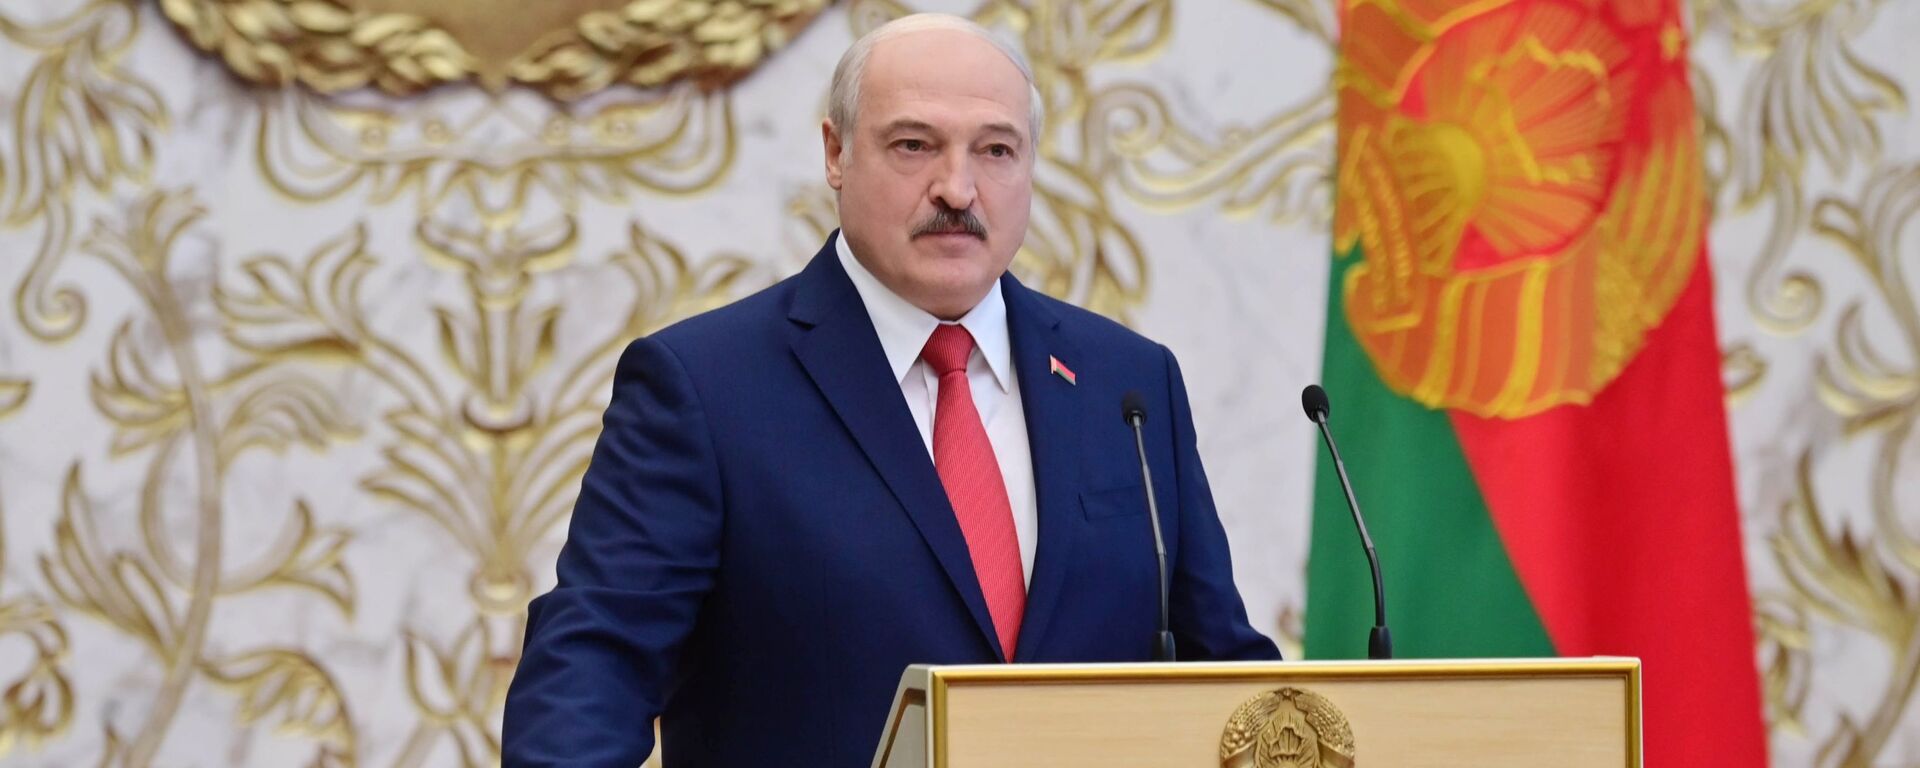 تنصيب الرئيس البيلاروسي ألكسندر لوكاشينكو، ميسنك، بيلاروسيا 23 سبتمبر 2020 - سبوتنيك عربي, 1920, 18.04.2021